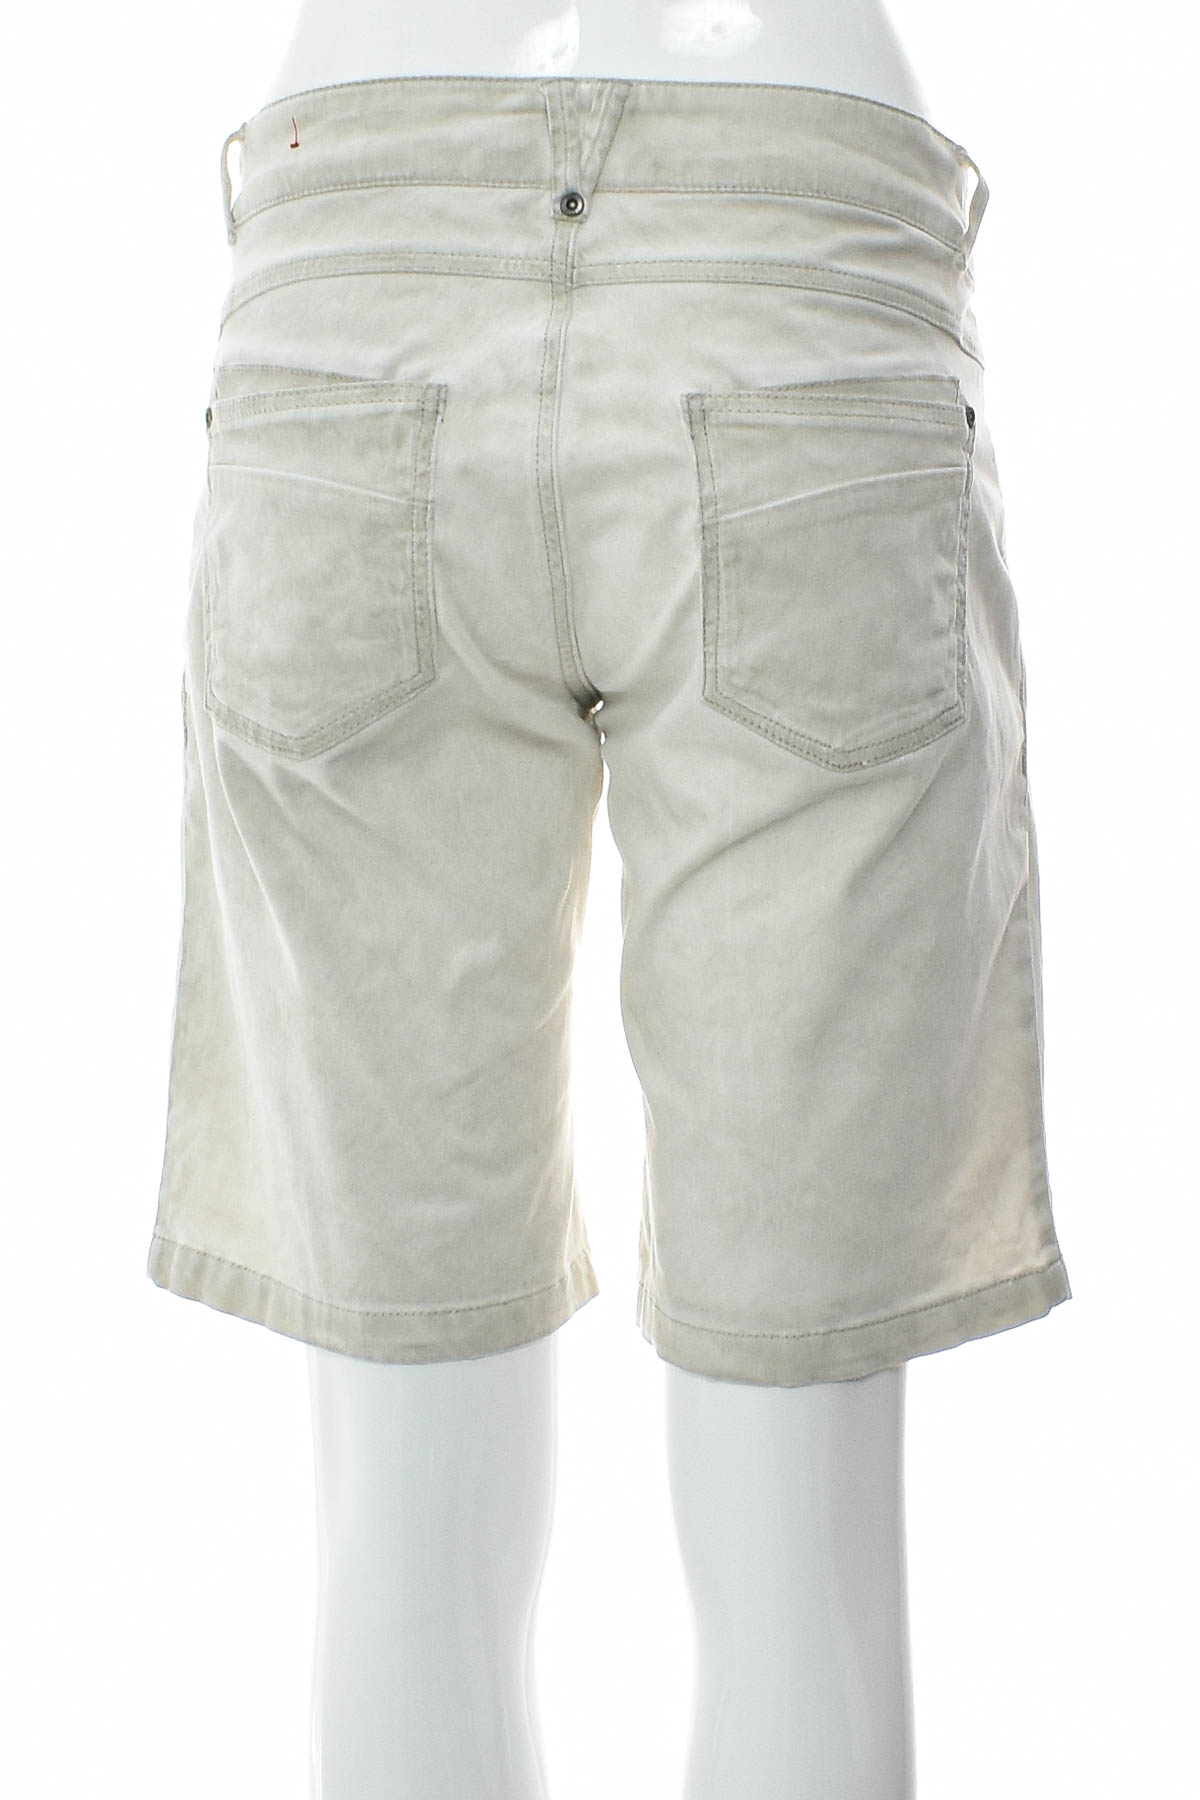 Female shorts - S.Oliver - 1